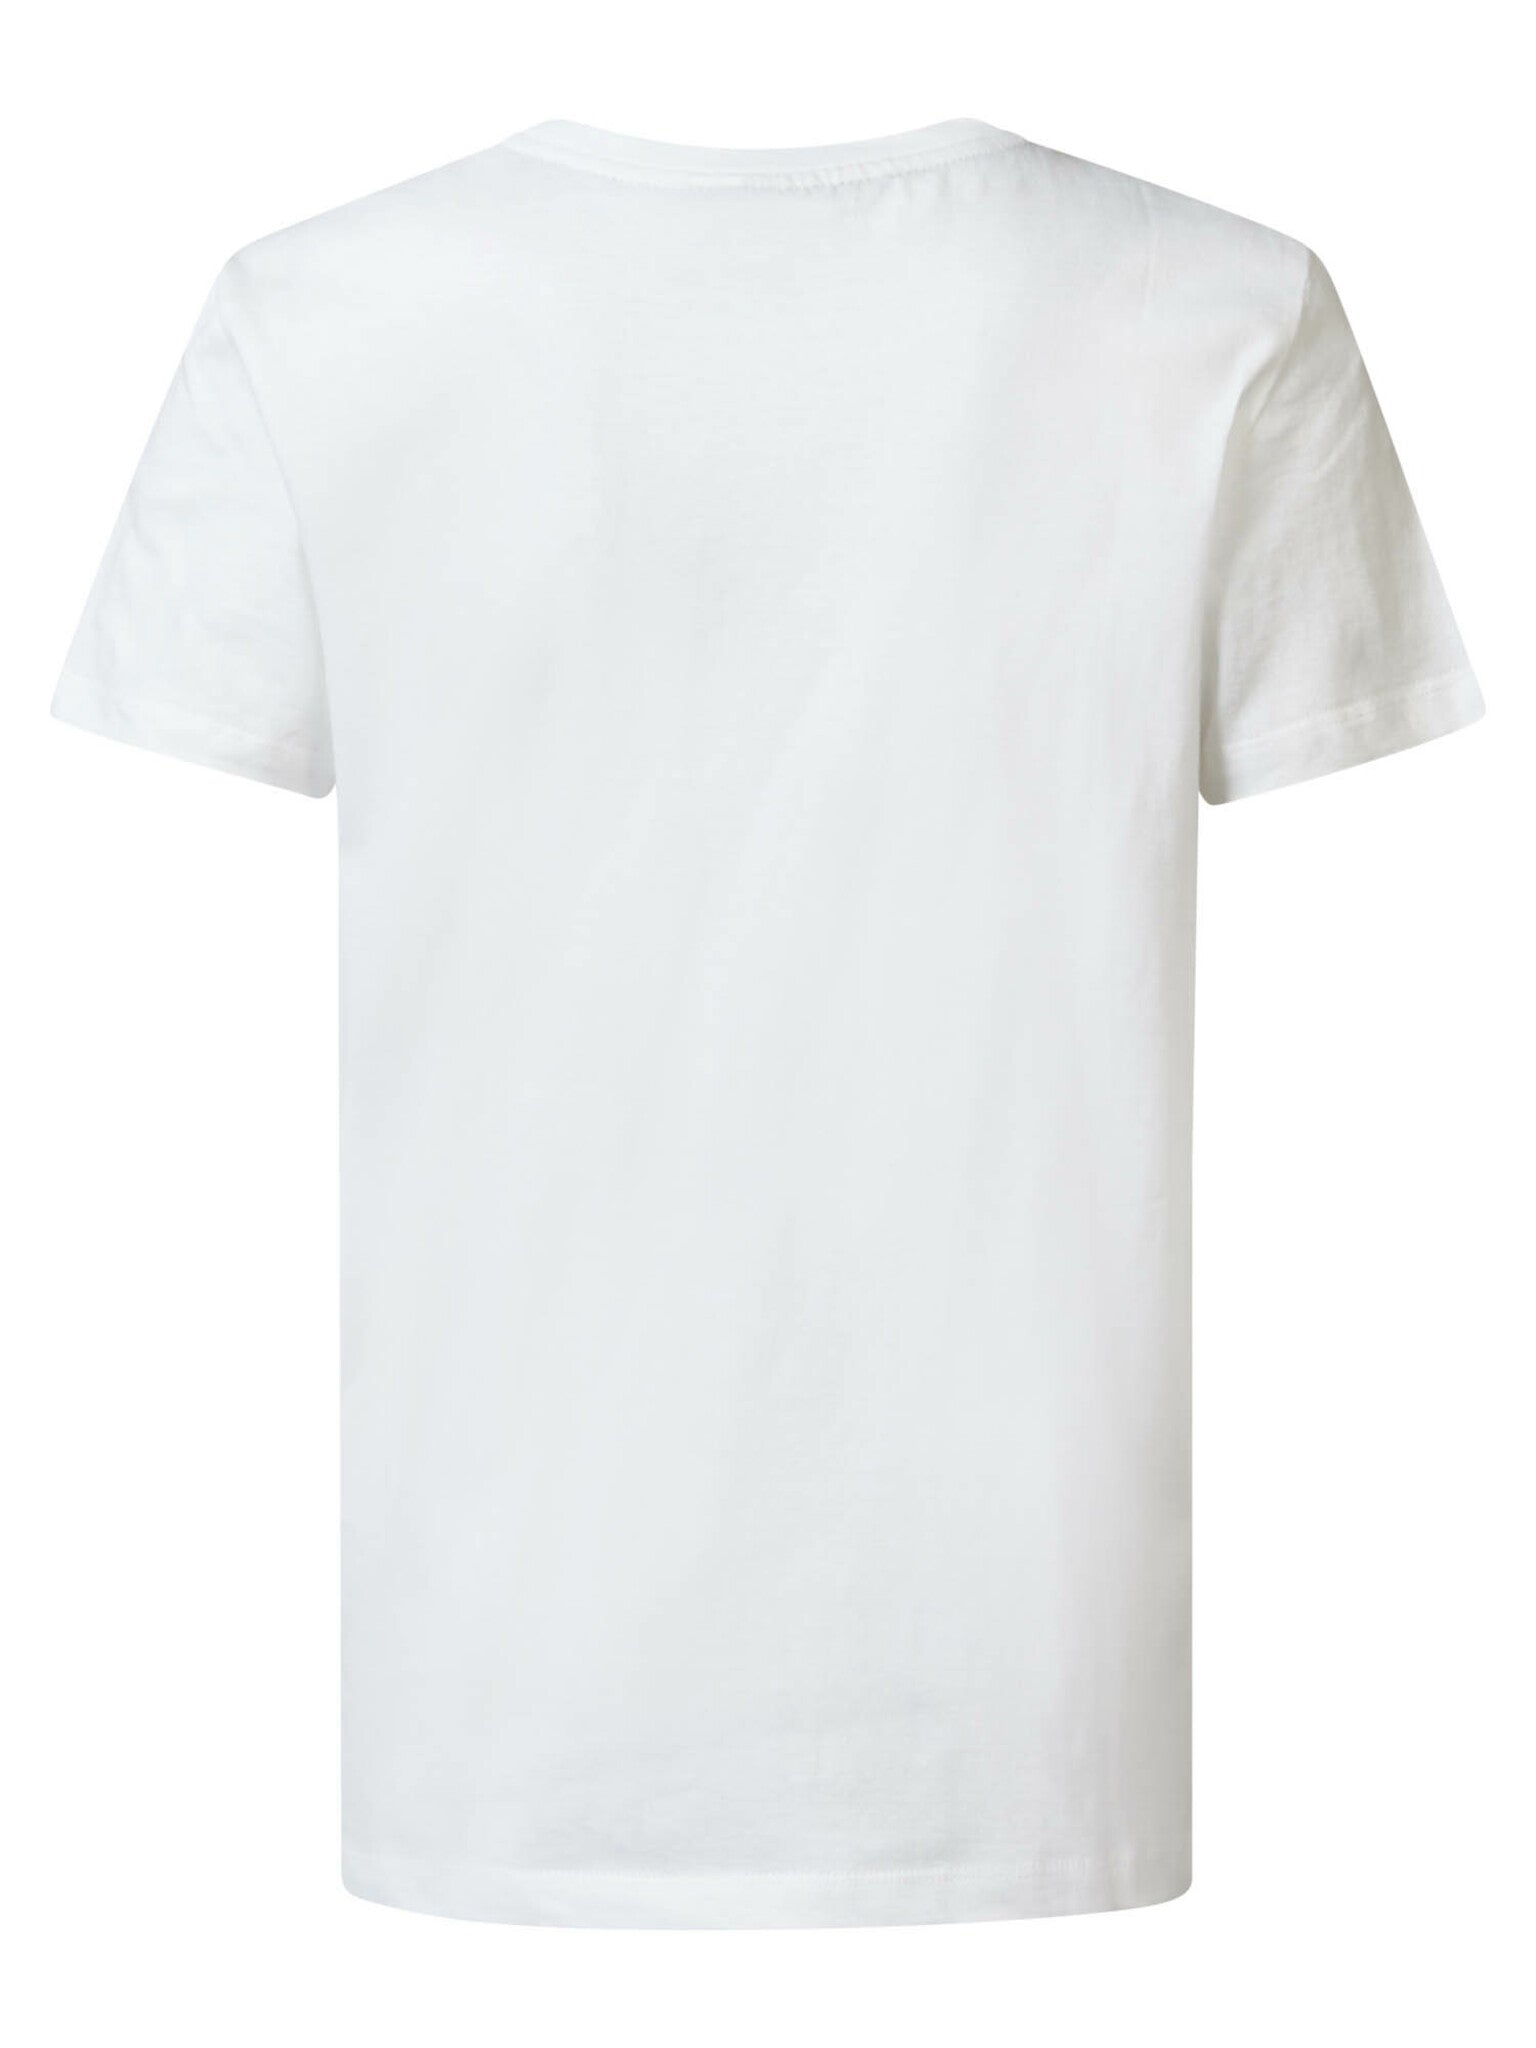 Jongens Boys T-Shirt SS Round Neck van Petrol in de kleur Bright White in maat 176.